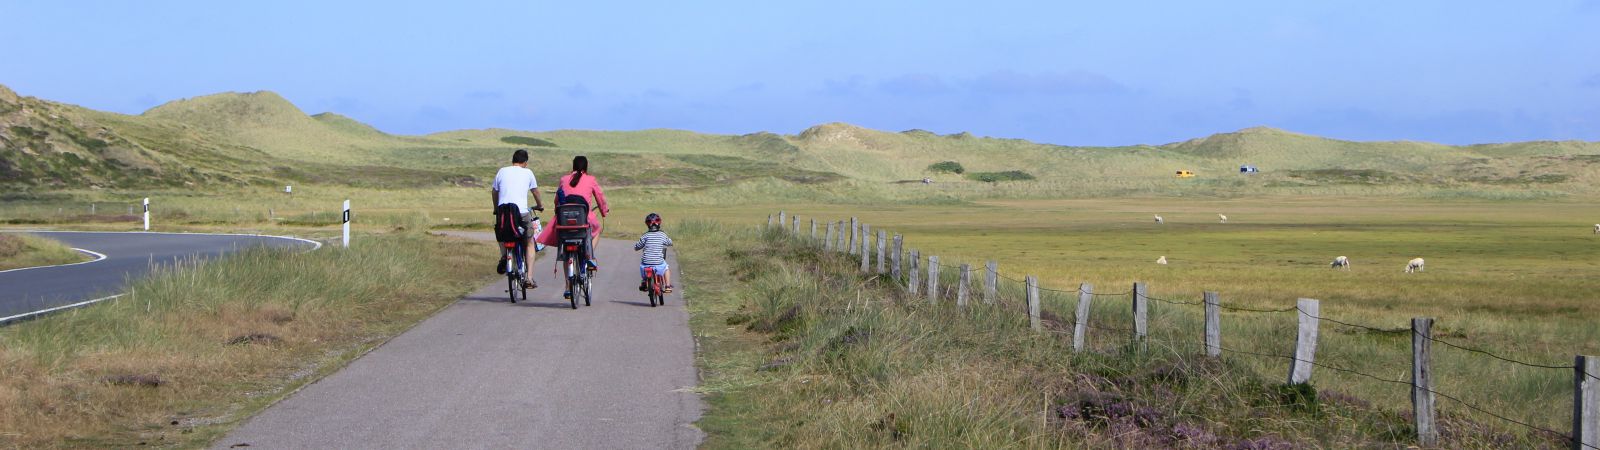 gezin fietst op lange weg